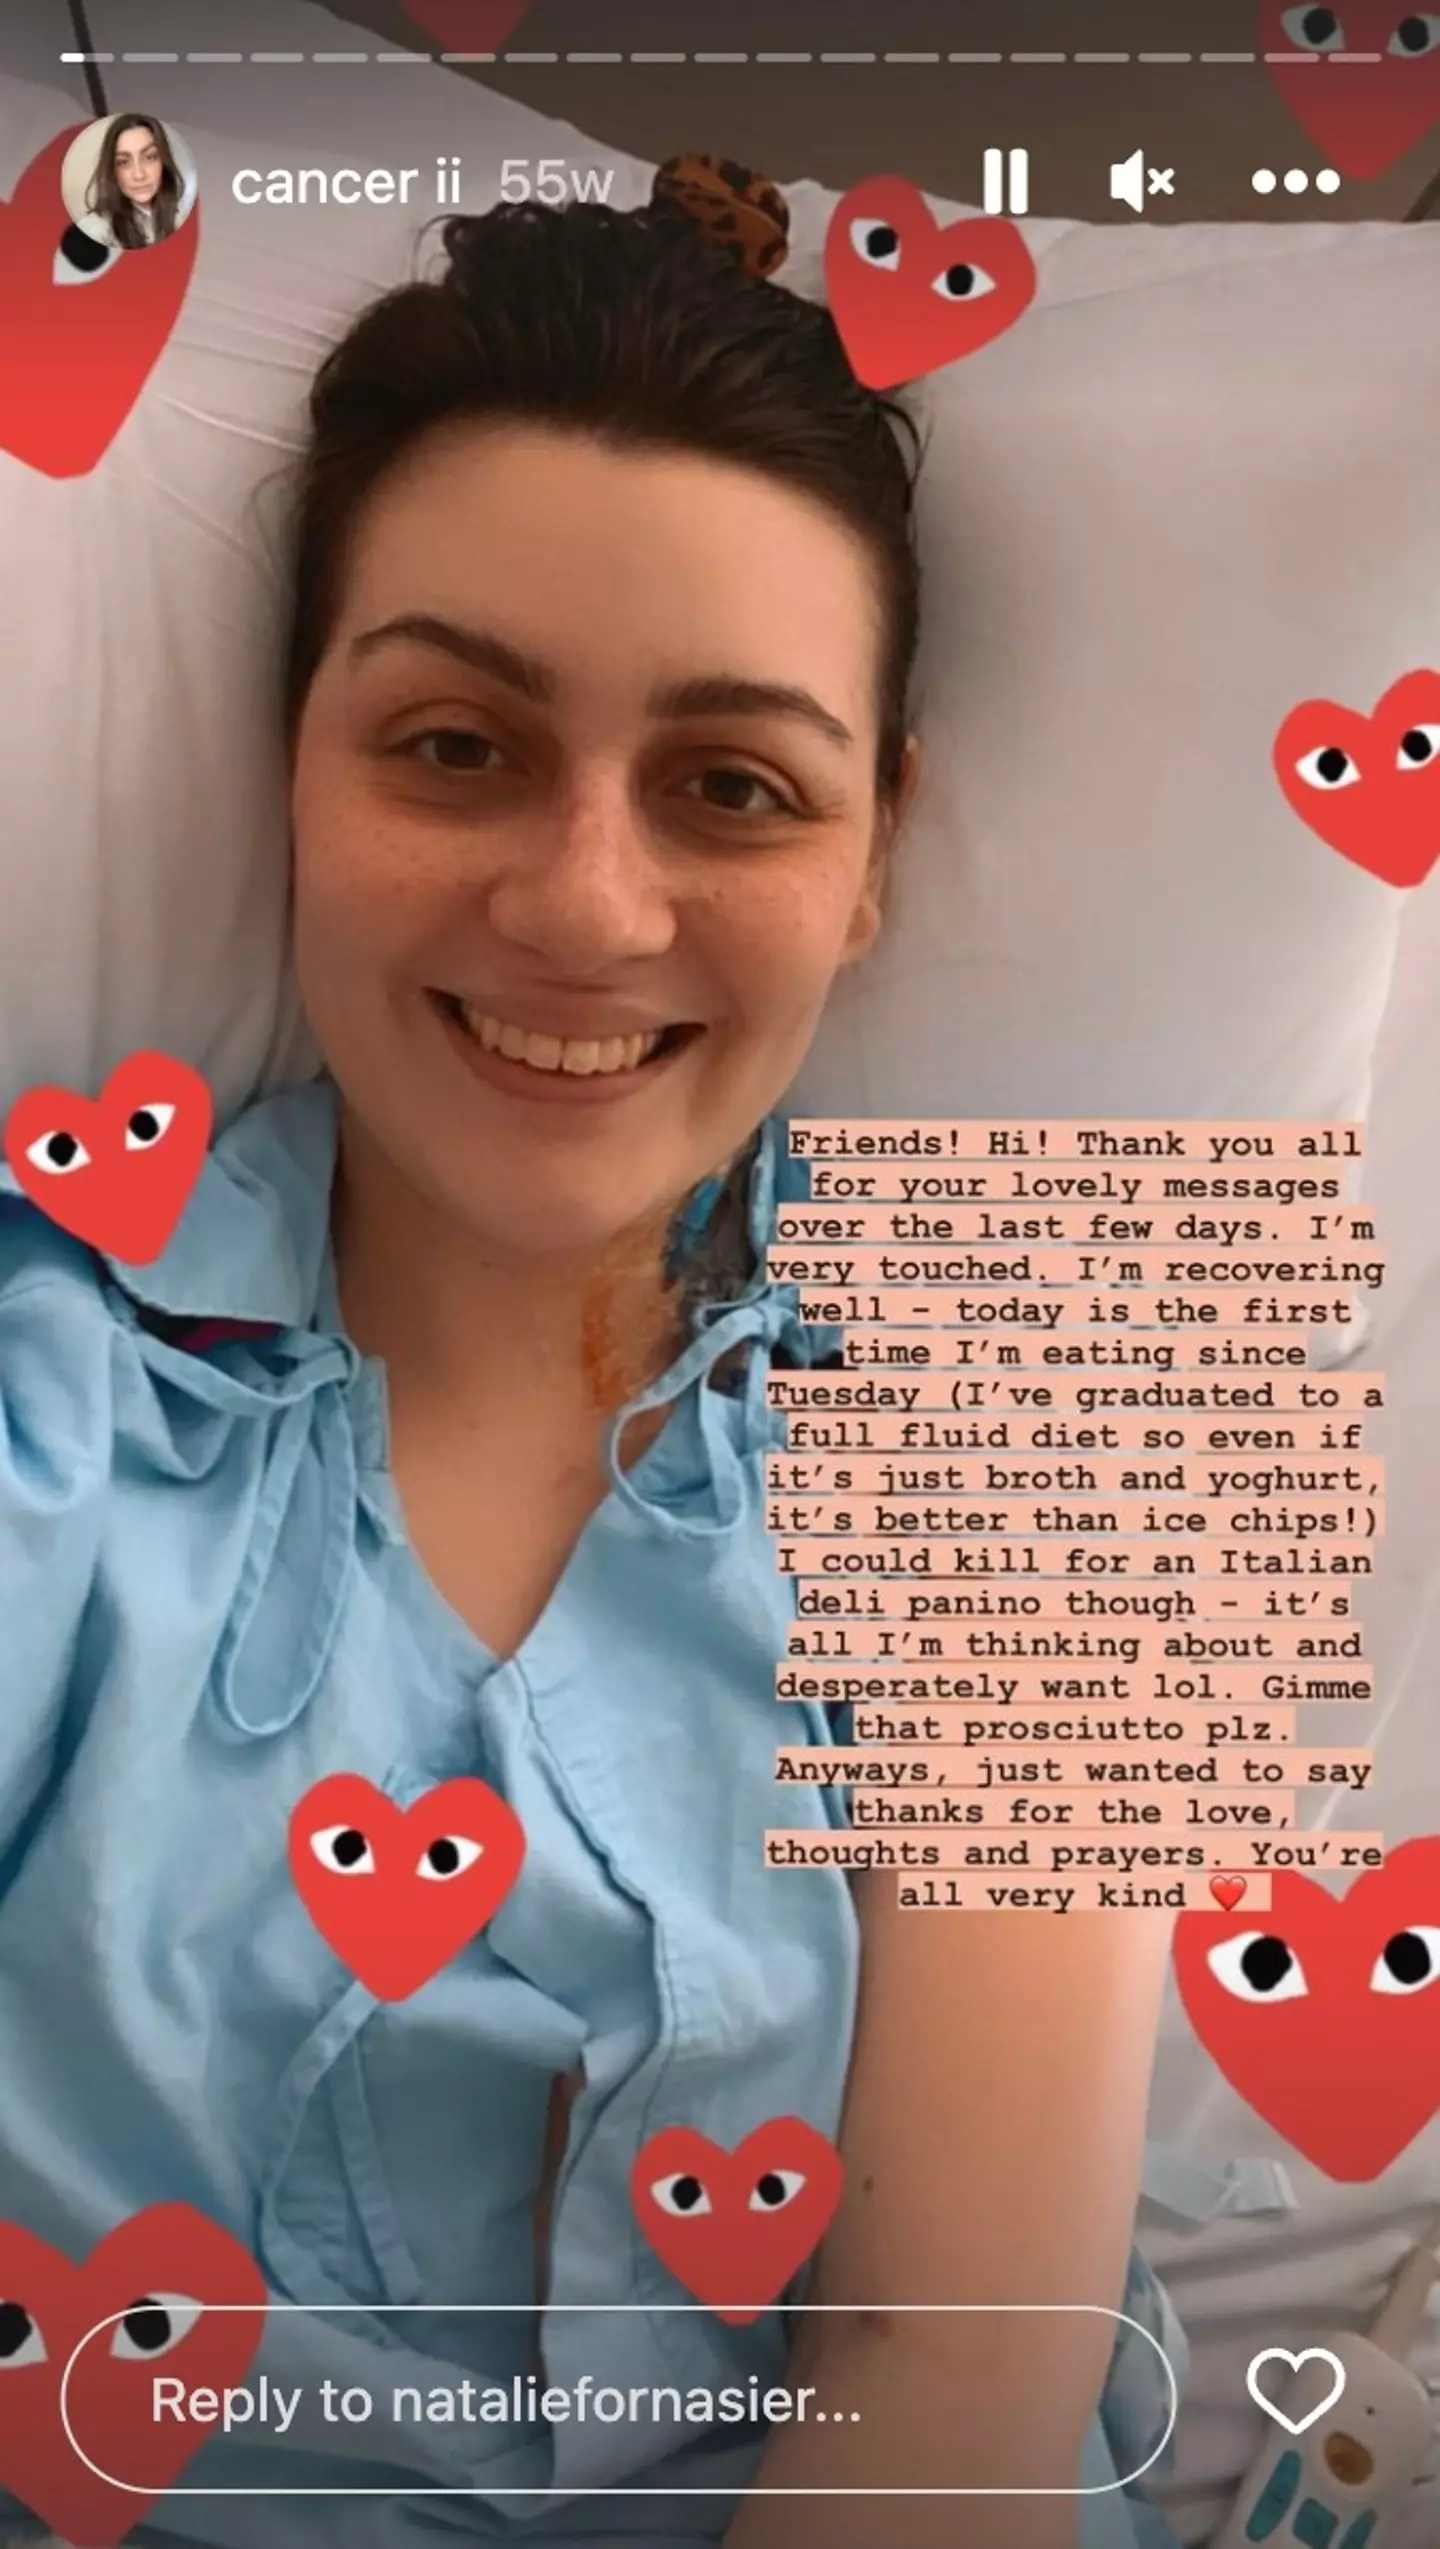 Natalie has bravely shared her story on Instagram.